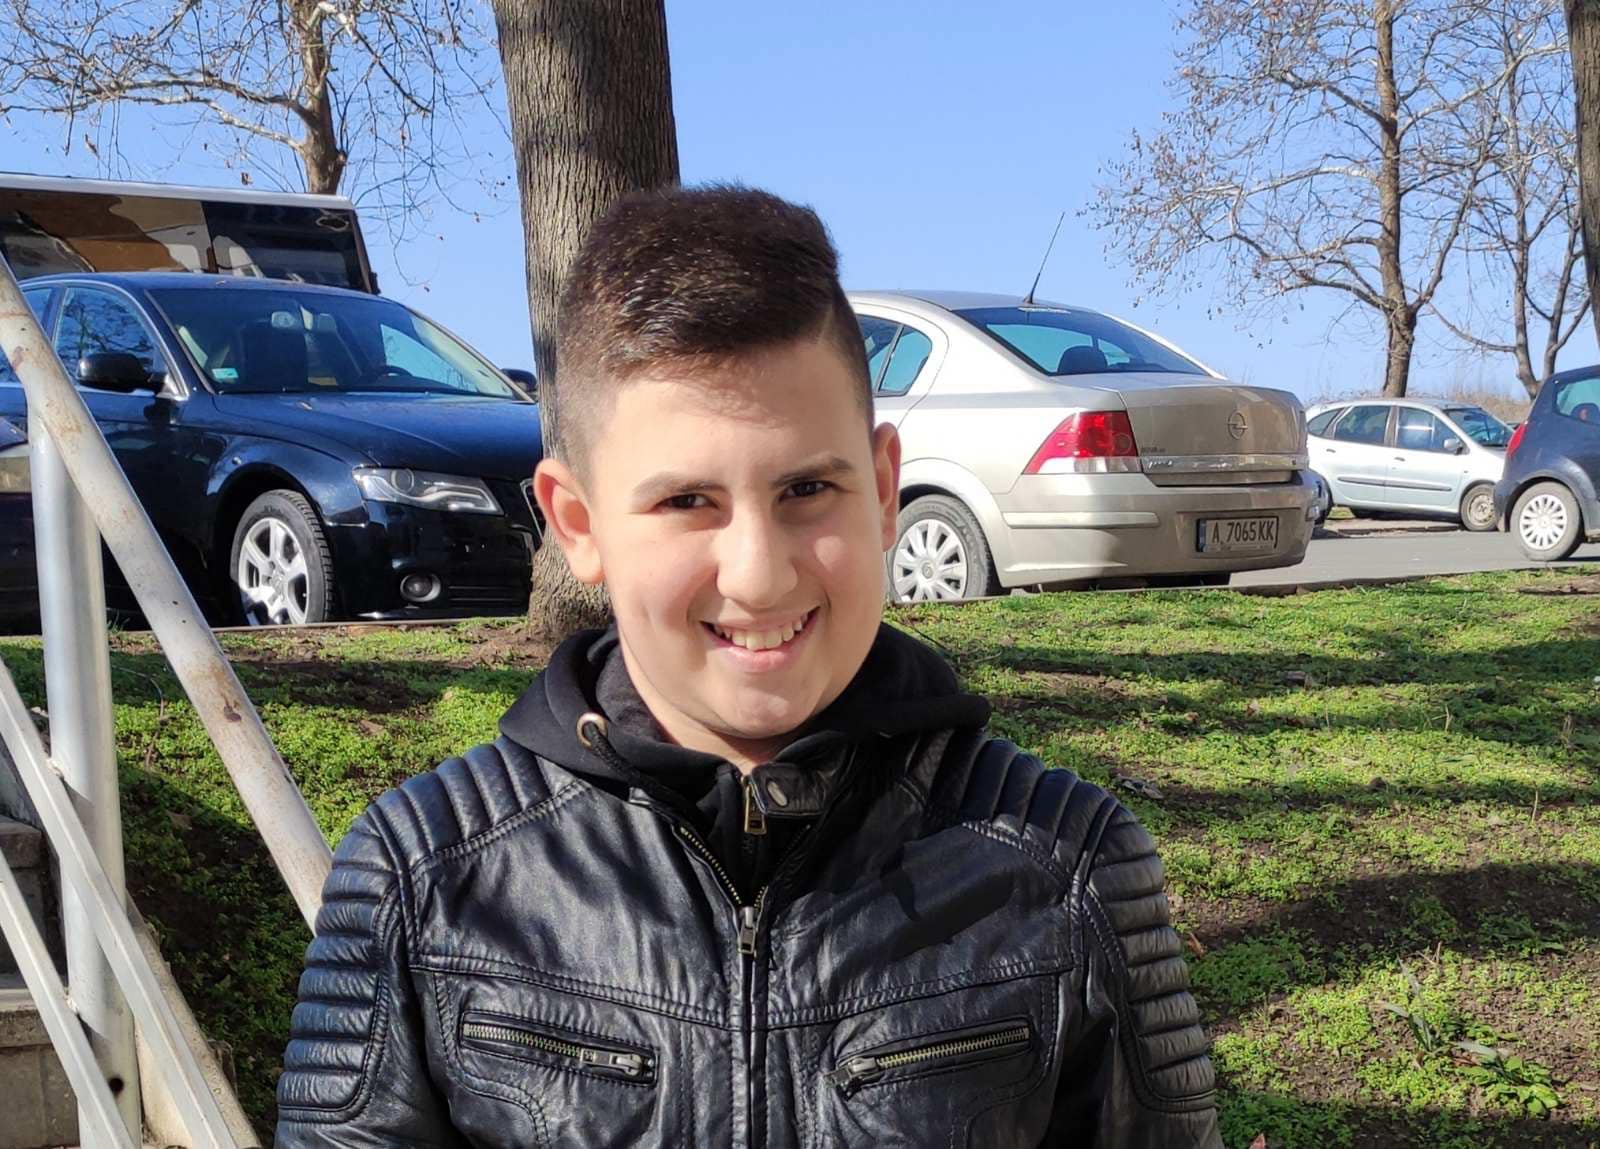 Християн Василев е само на 12 години и е изправен